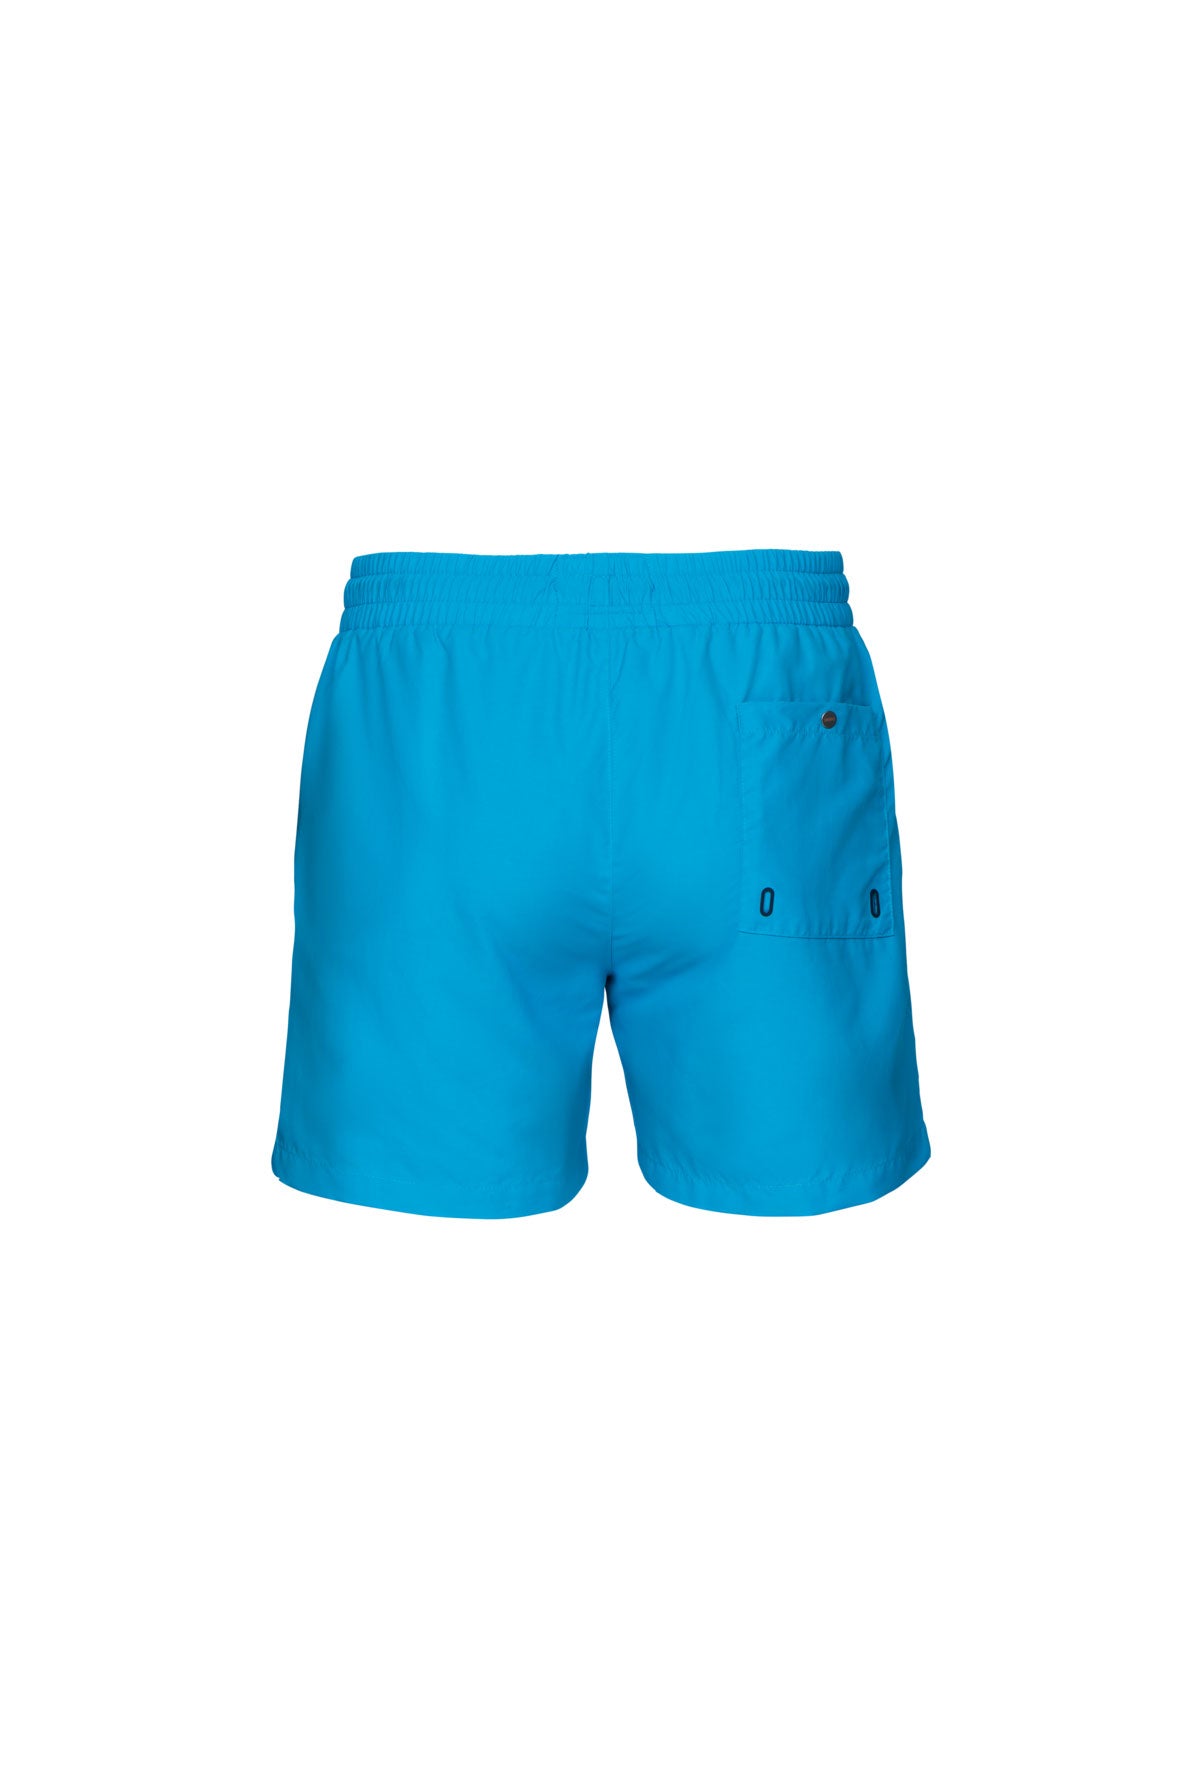 The Swim Shorts - Fjord Blue